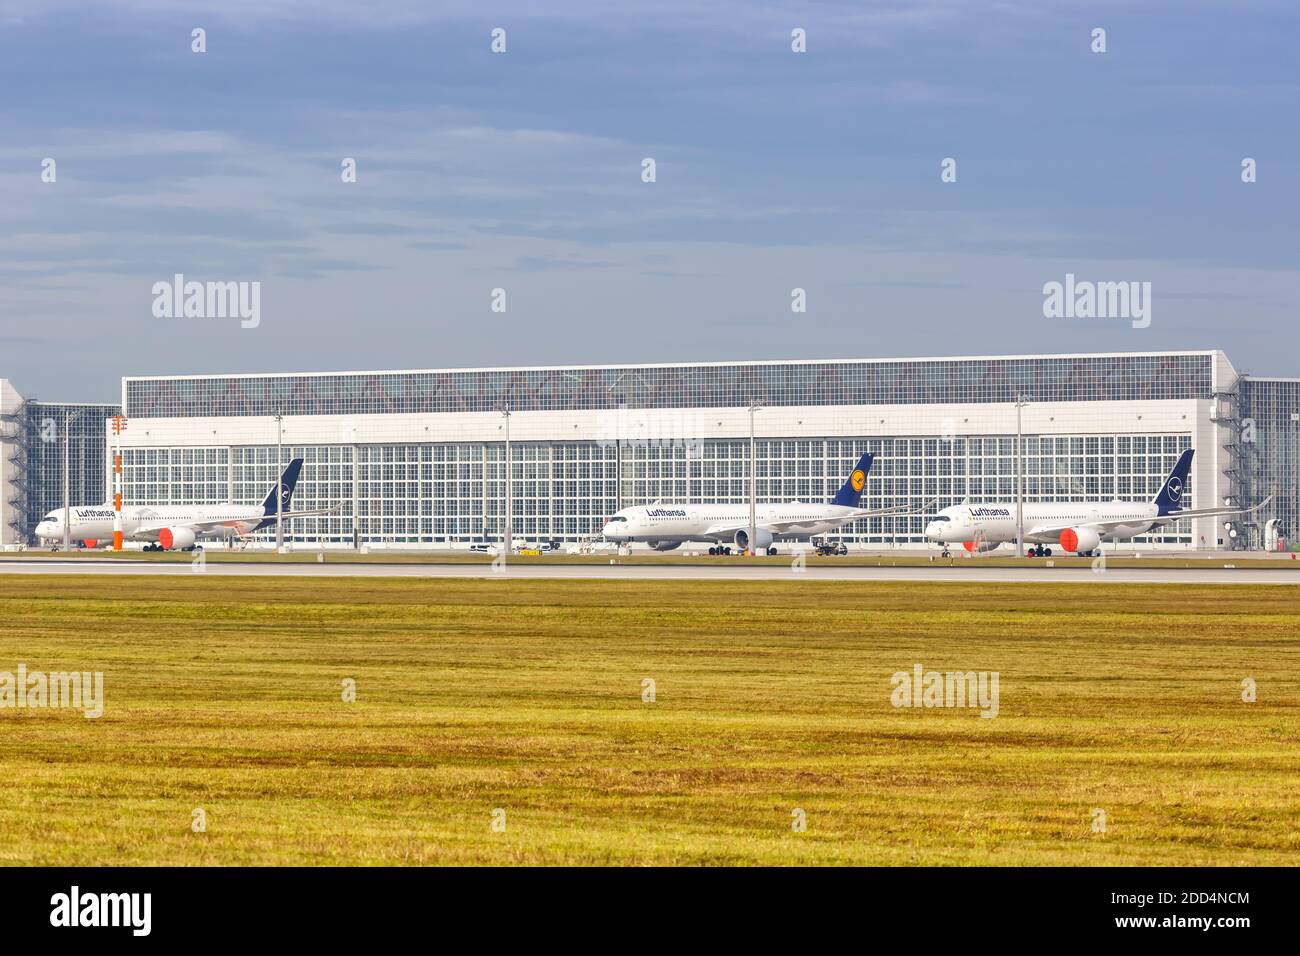 München, 21. Oktober 2020: Lufthansa Airbus A350-Flugzeuge wurden am Flughafen München (MUC) in Deutschland eingelagert. Stockfoto